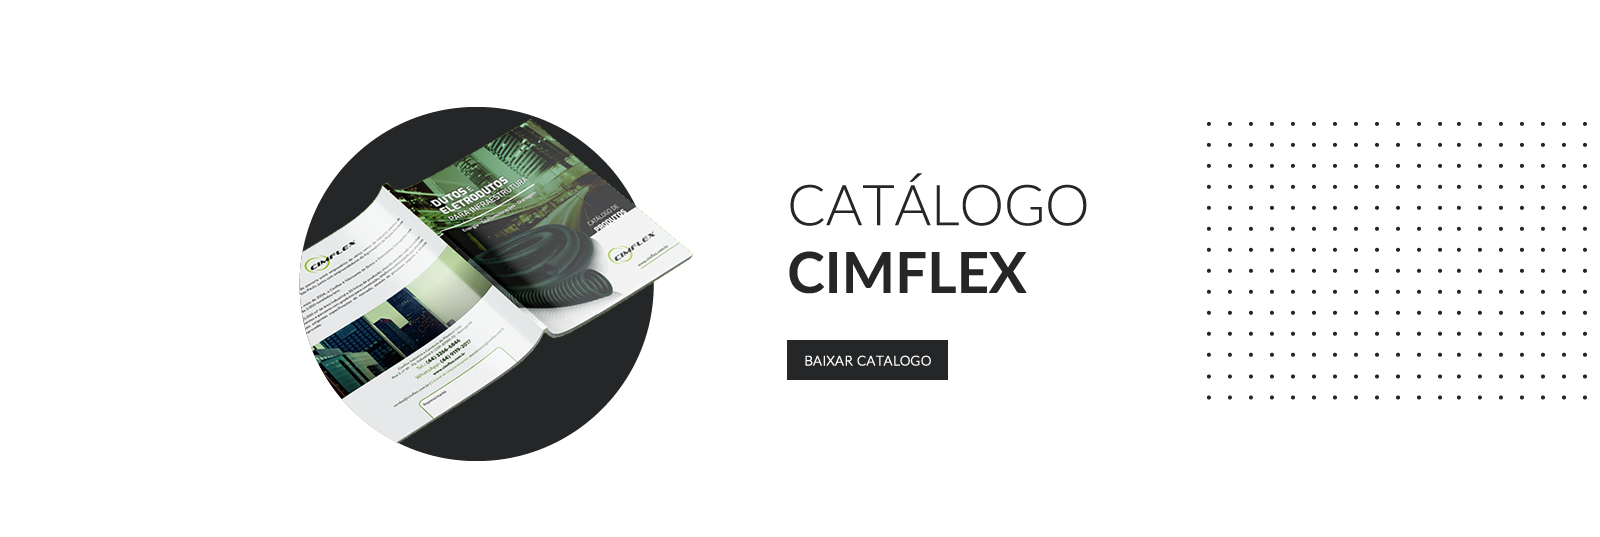 Catálogo Cimflex 2021/2022